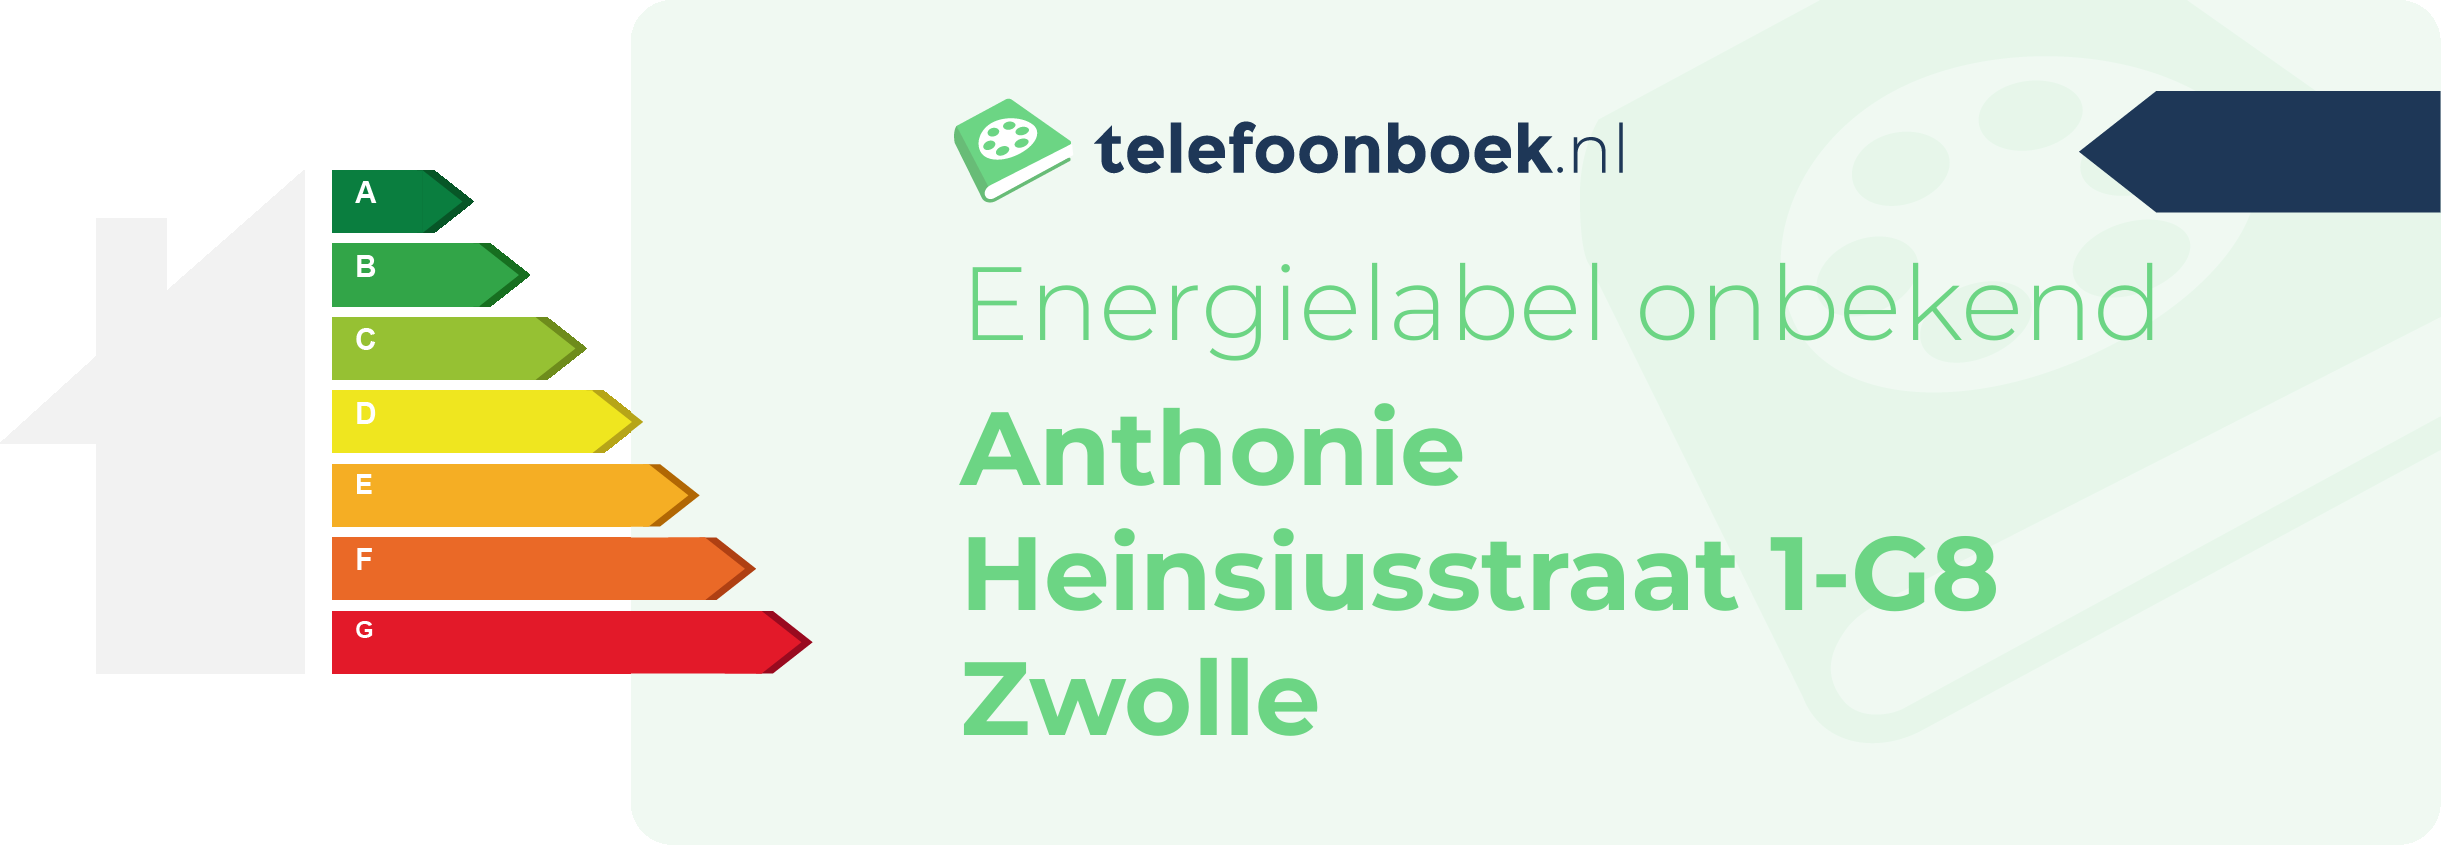 Energielabel Anthonie Heinsiusstraat 1-G8 Zwolle